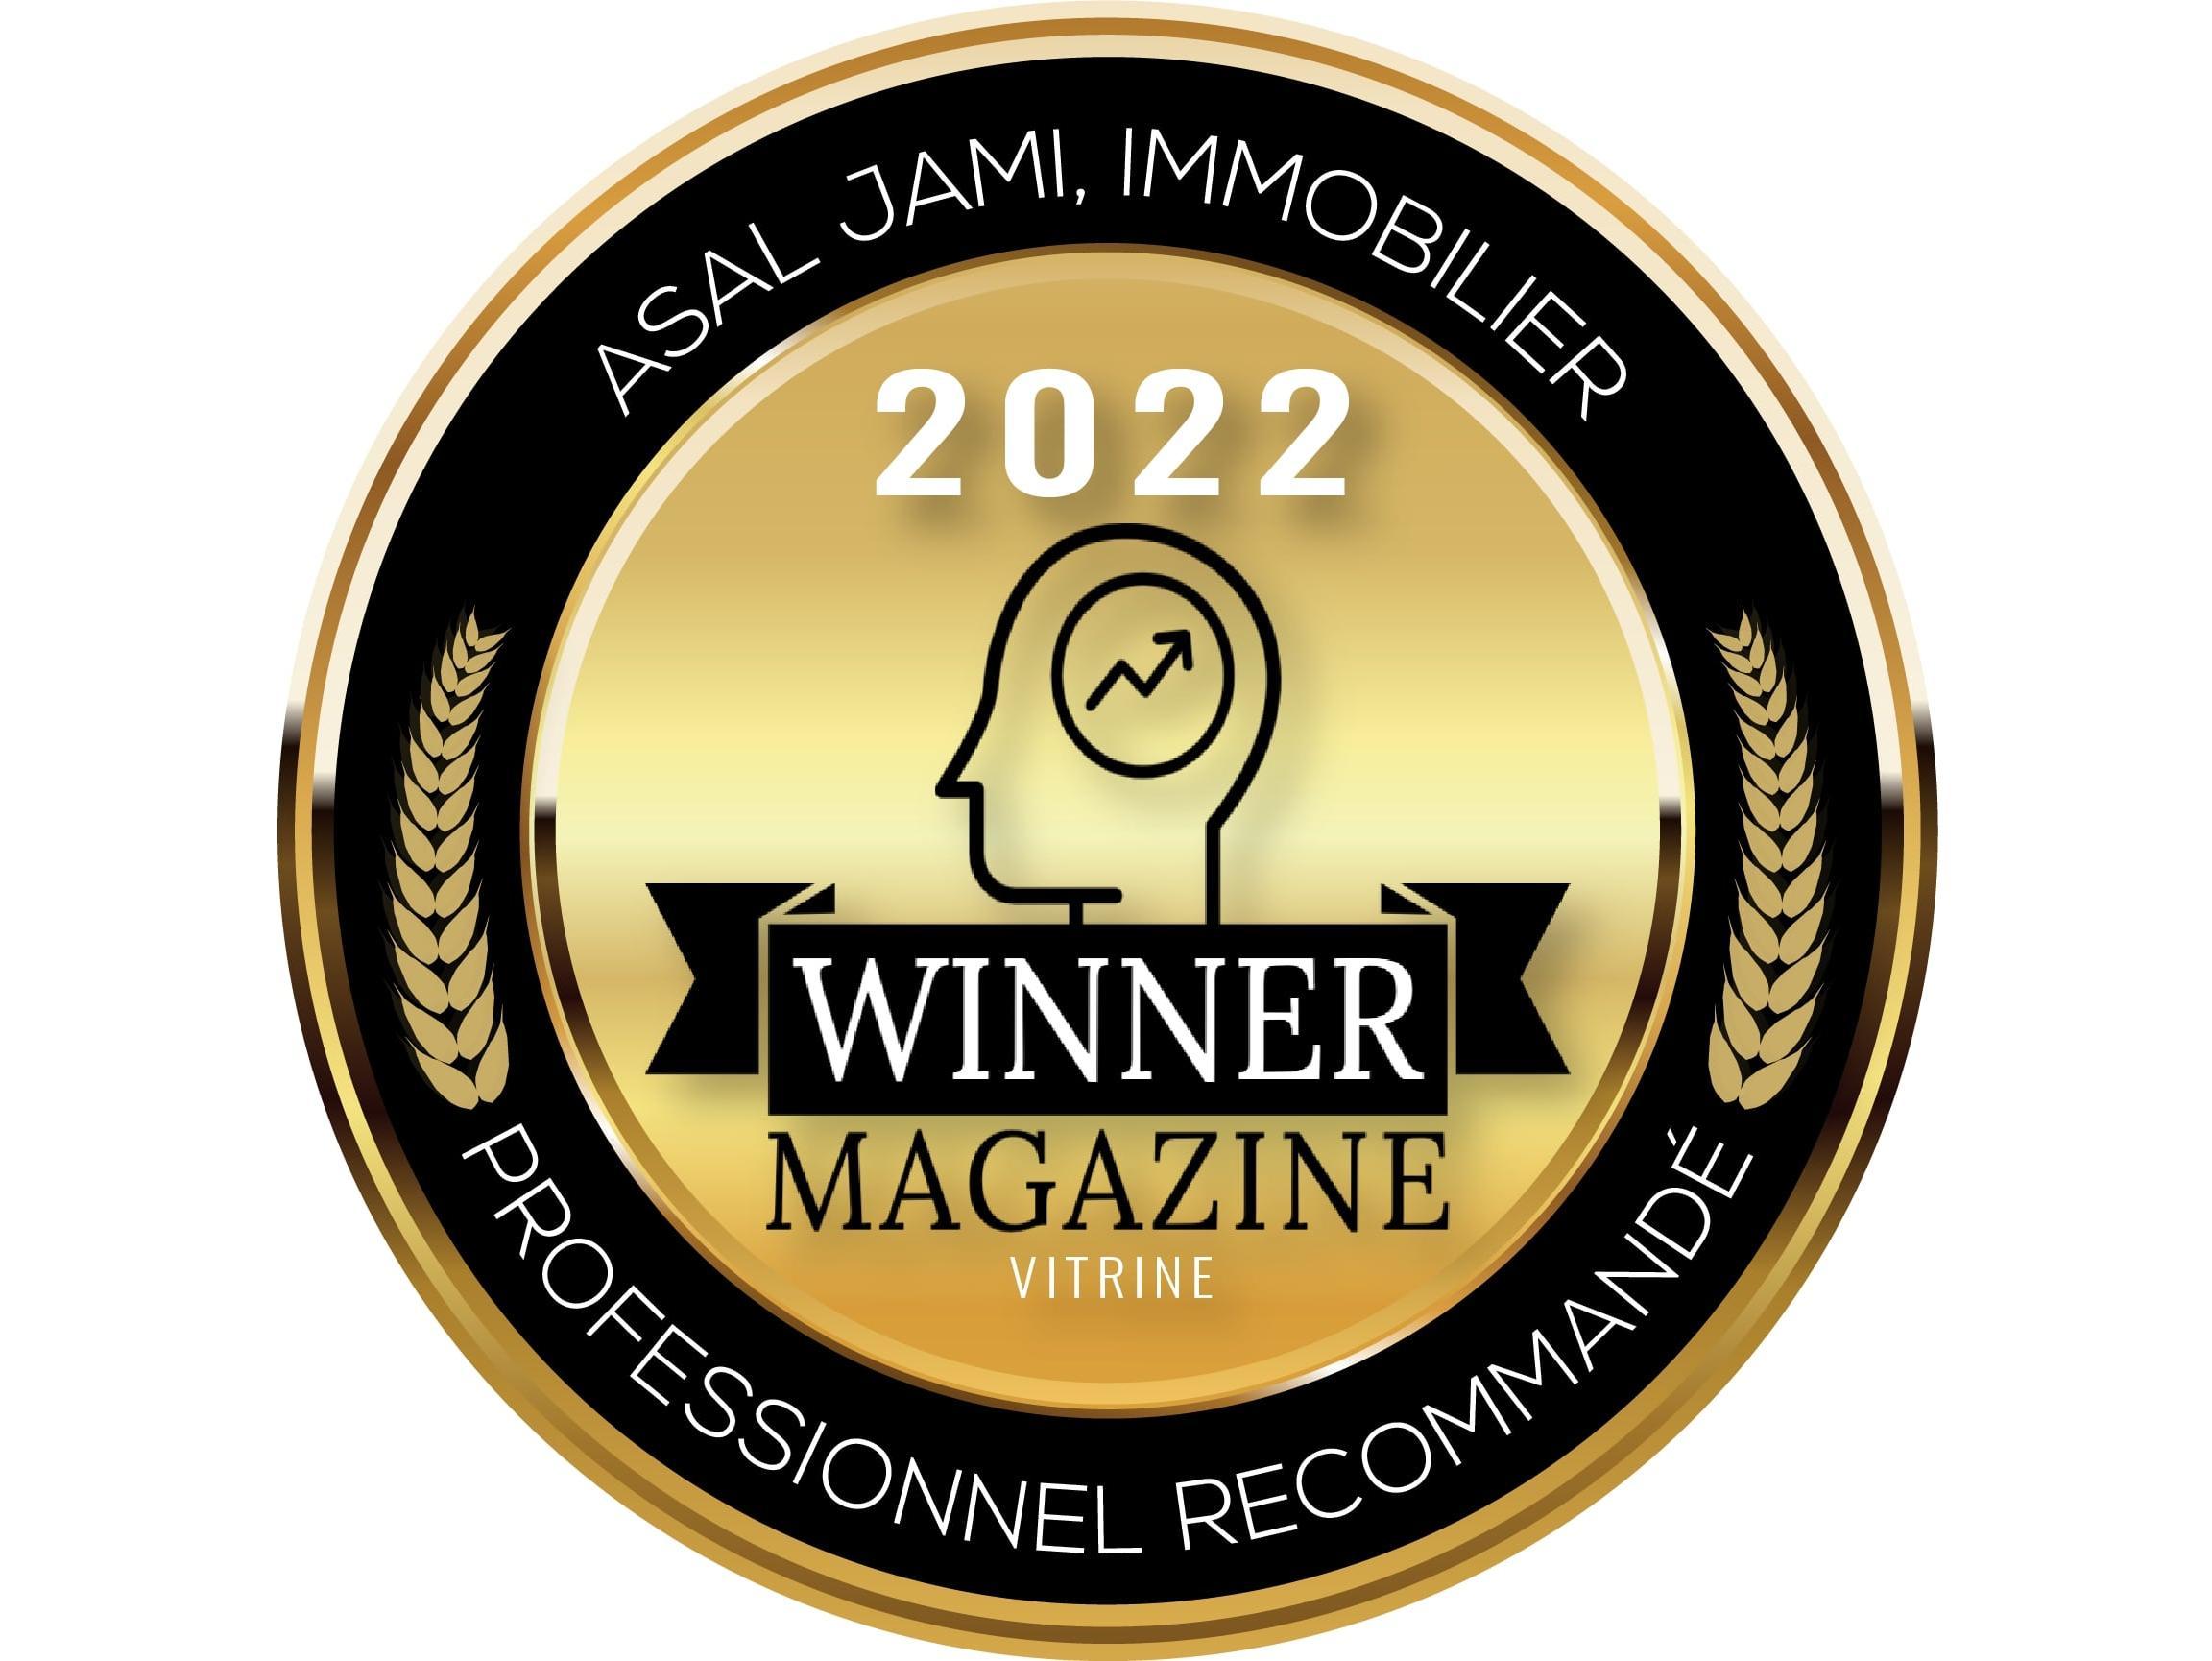 Winner Magazine 2022